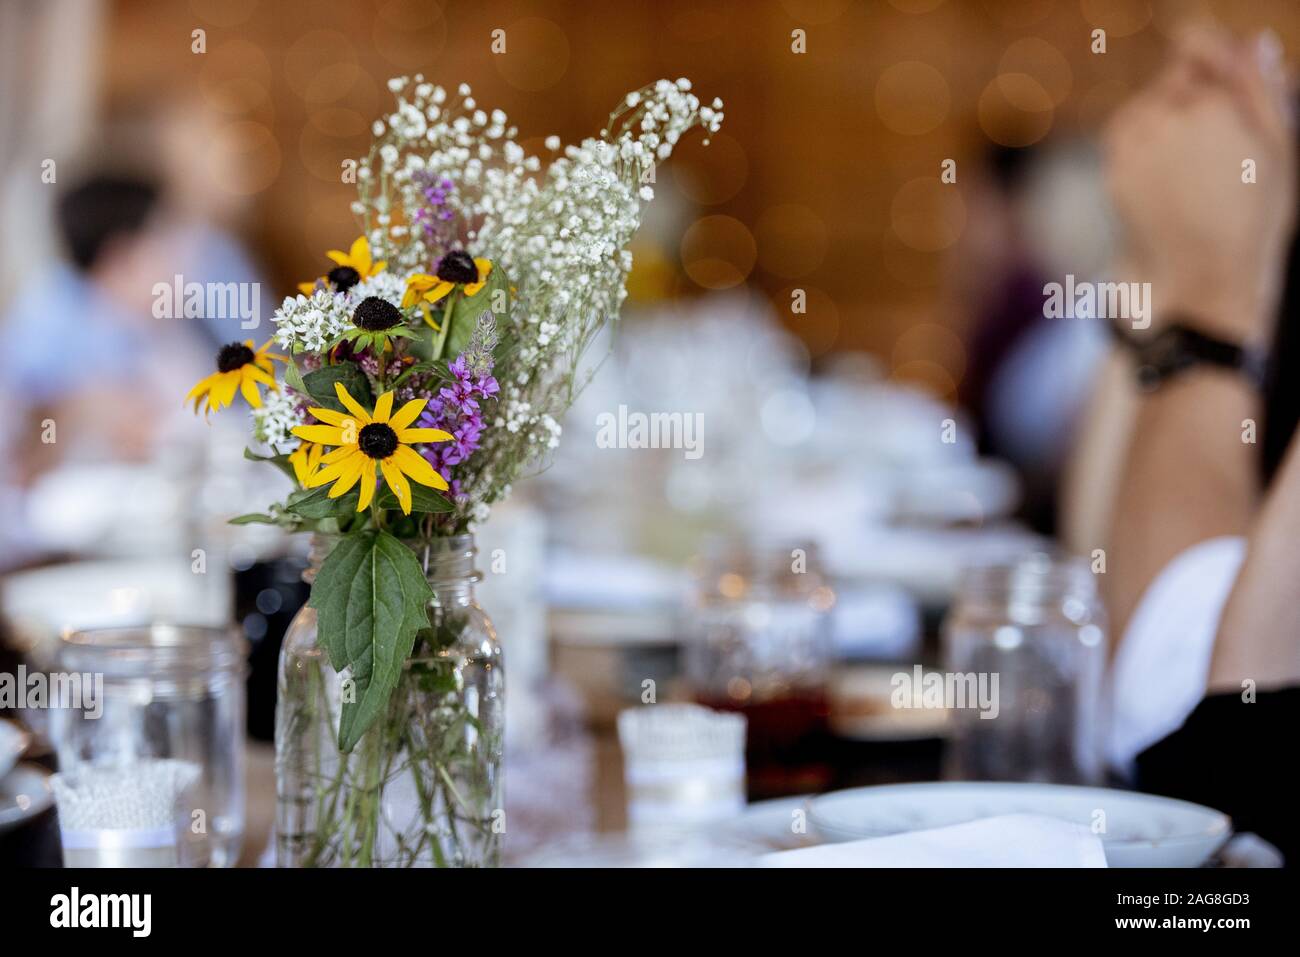 Nahaufnahme von Blumen in einem Glas mit einem Unscharfer Hintergrund Stockfoto